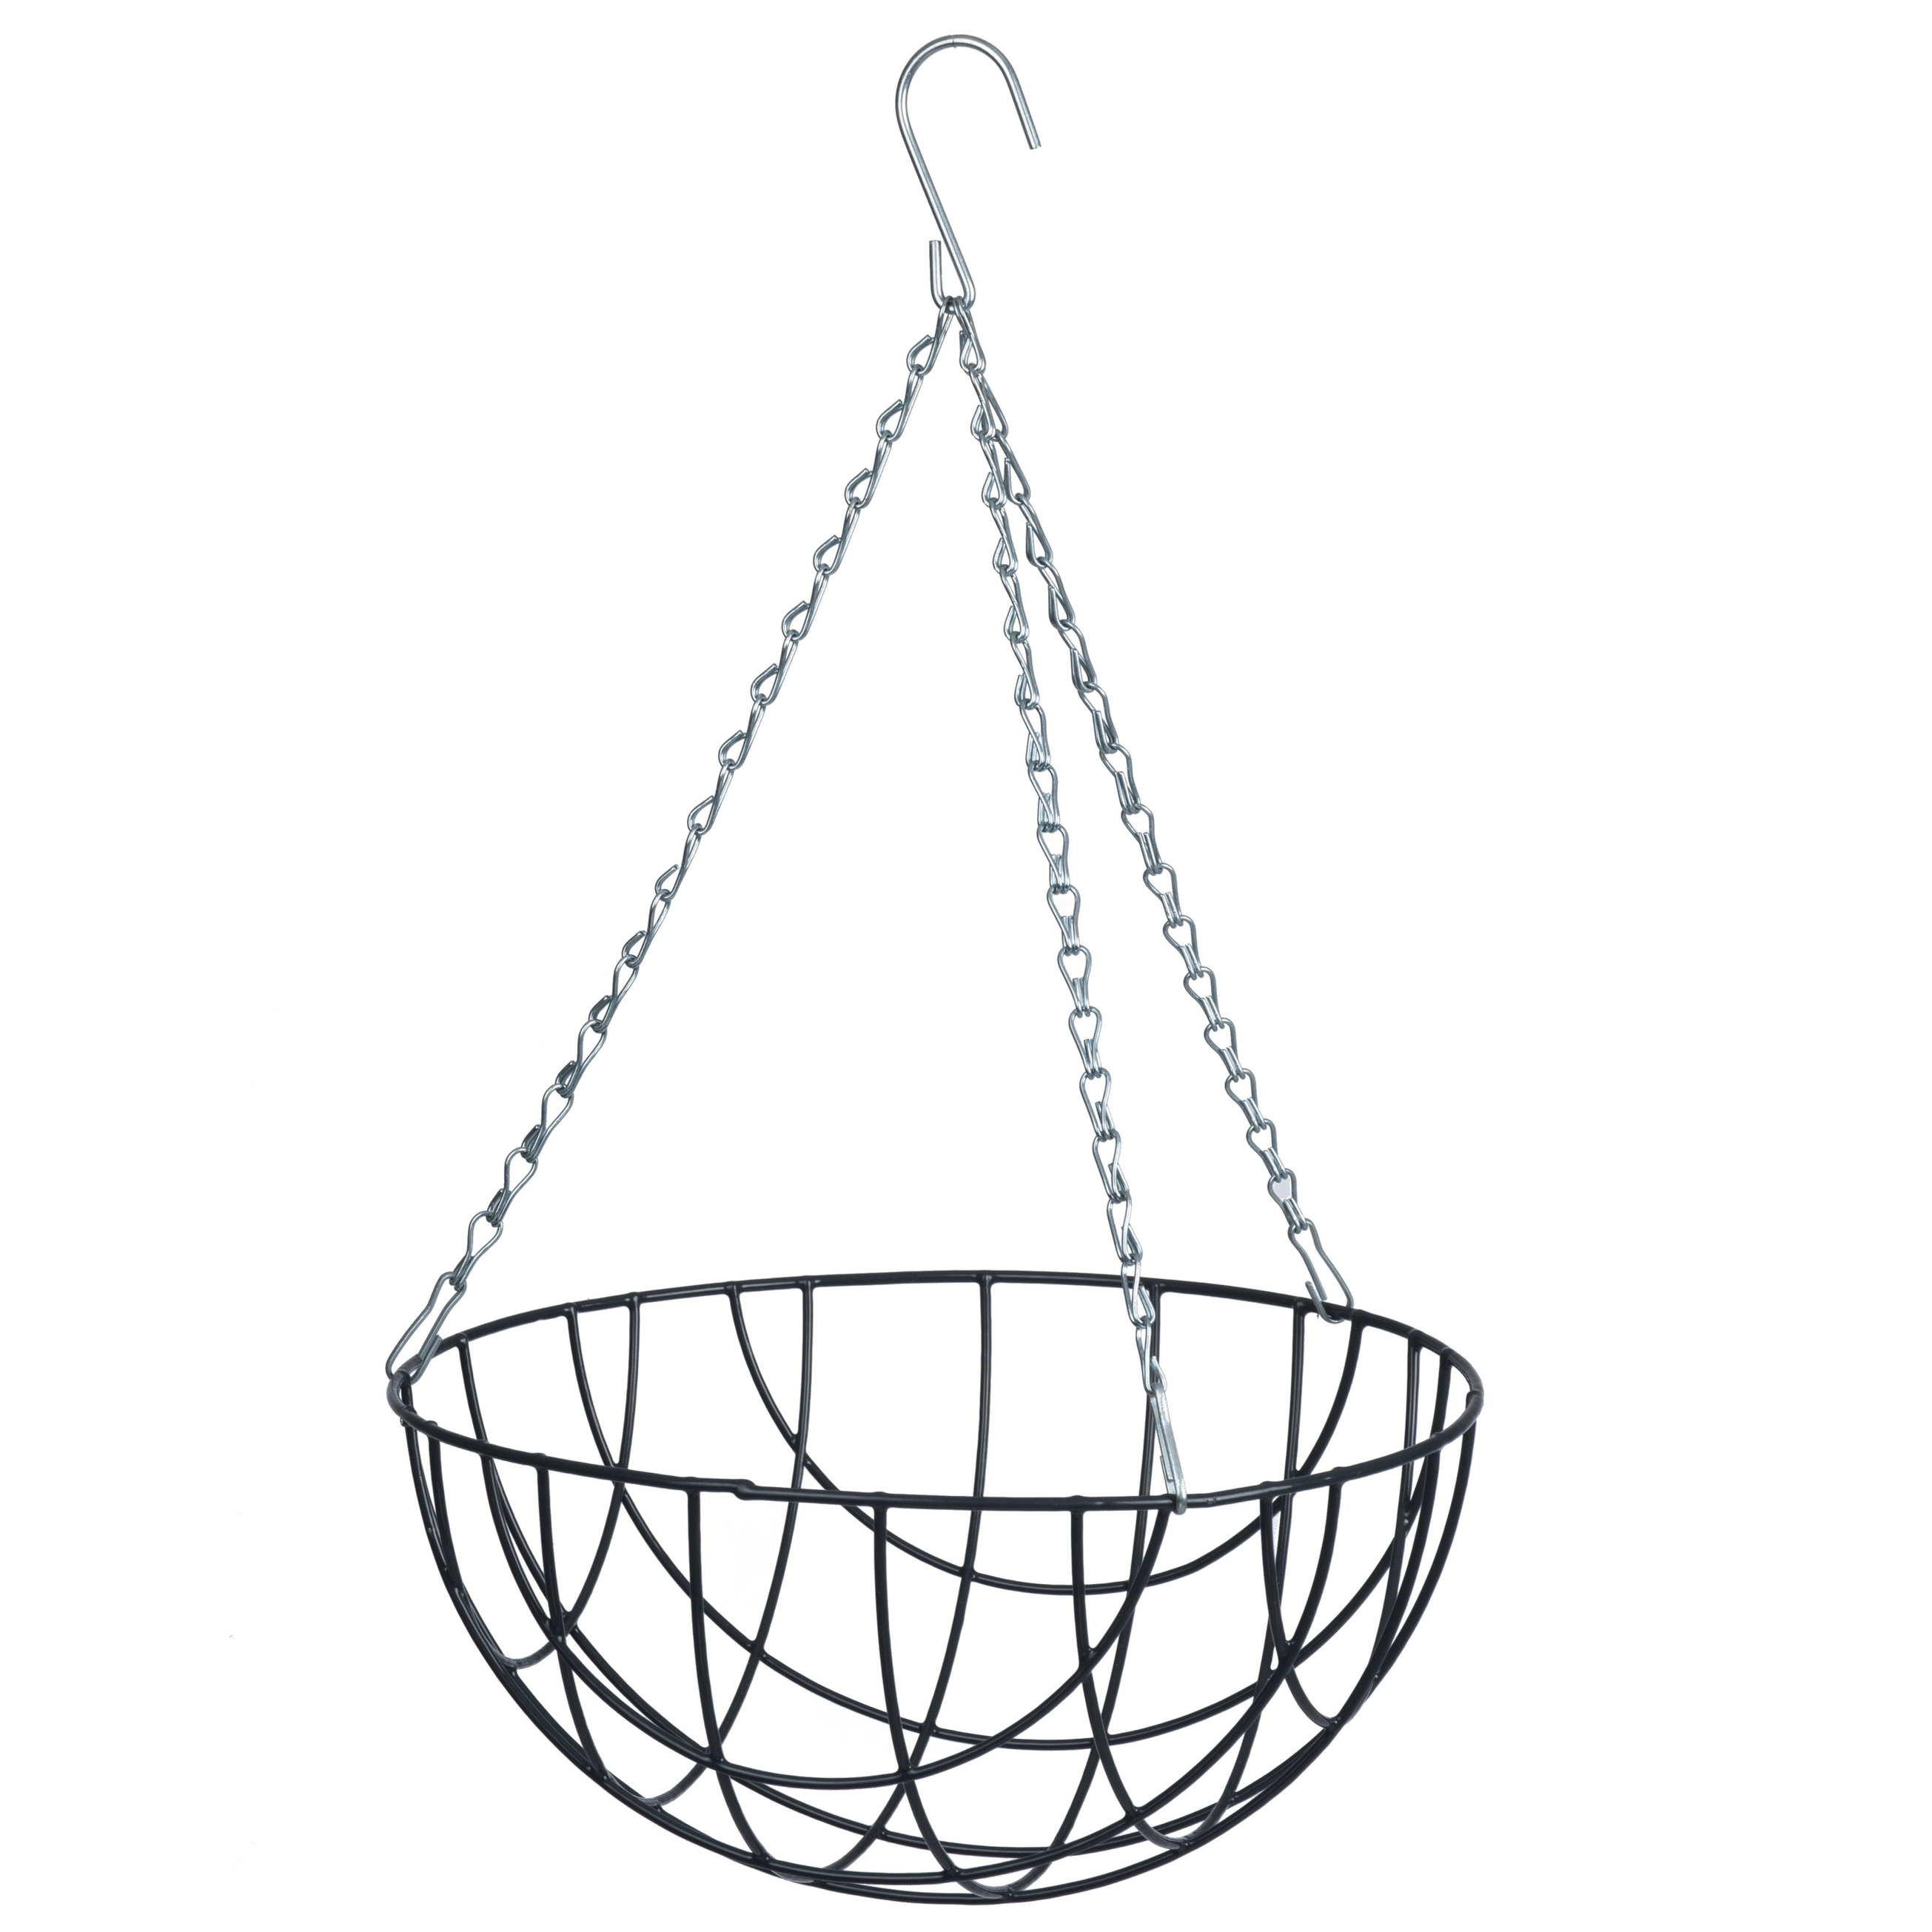 Hanging basket / plantenbak grijs met ketting 17 x 35 x 35 cm - metaaldraad - hangende bloemenmand -